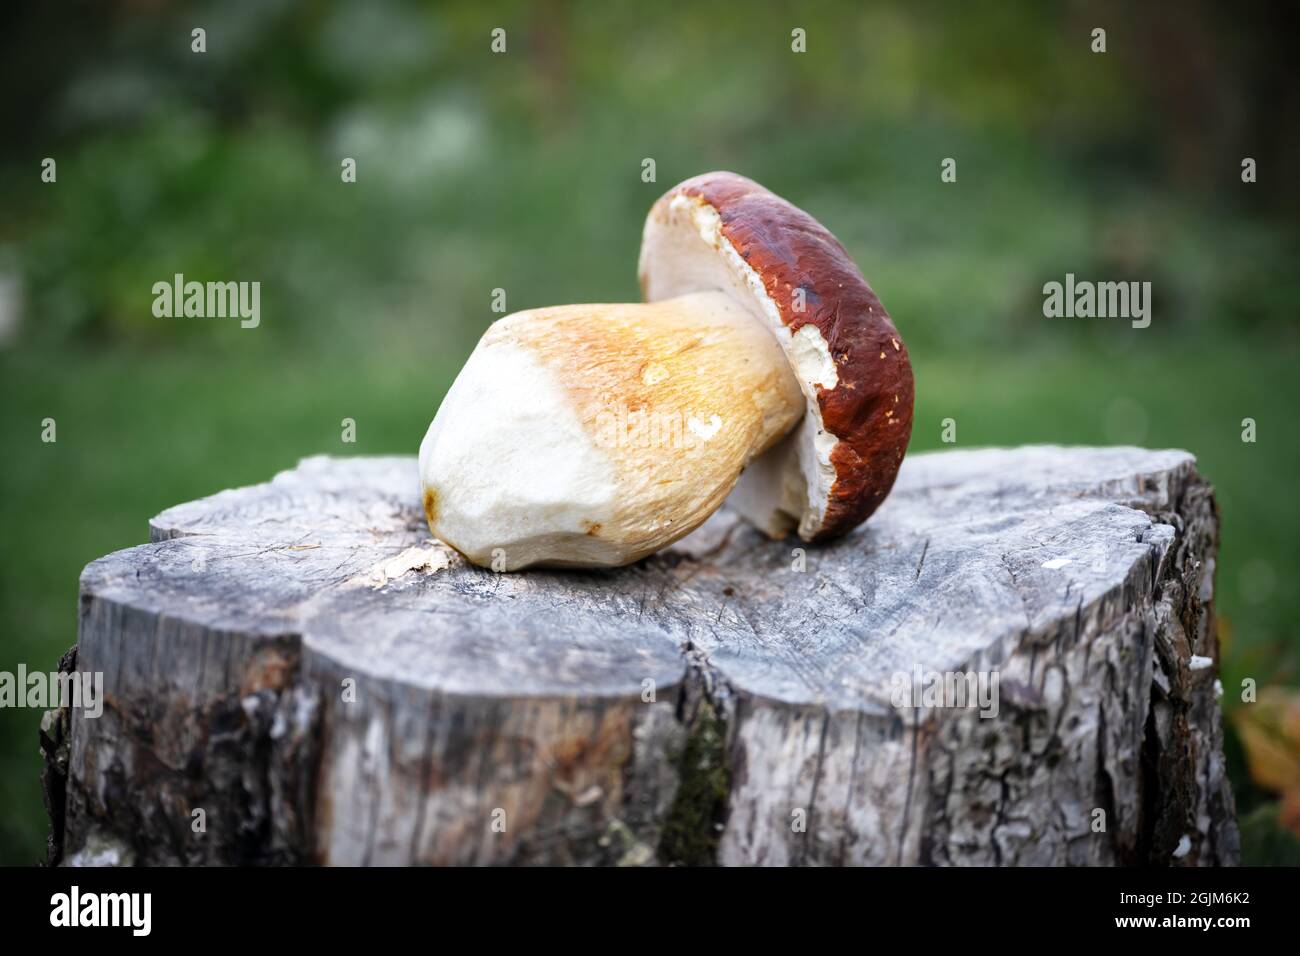 Grand porcini aux champignons blancs sur une assiette en bois dans le jardin d'automne. Photographie alimentaire Banque D'Images